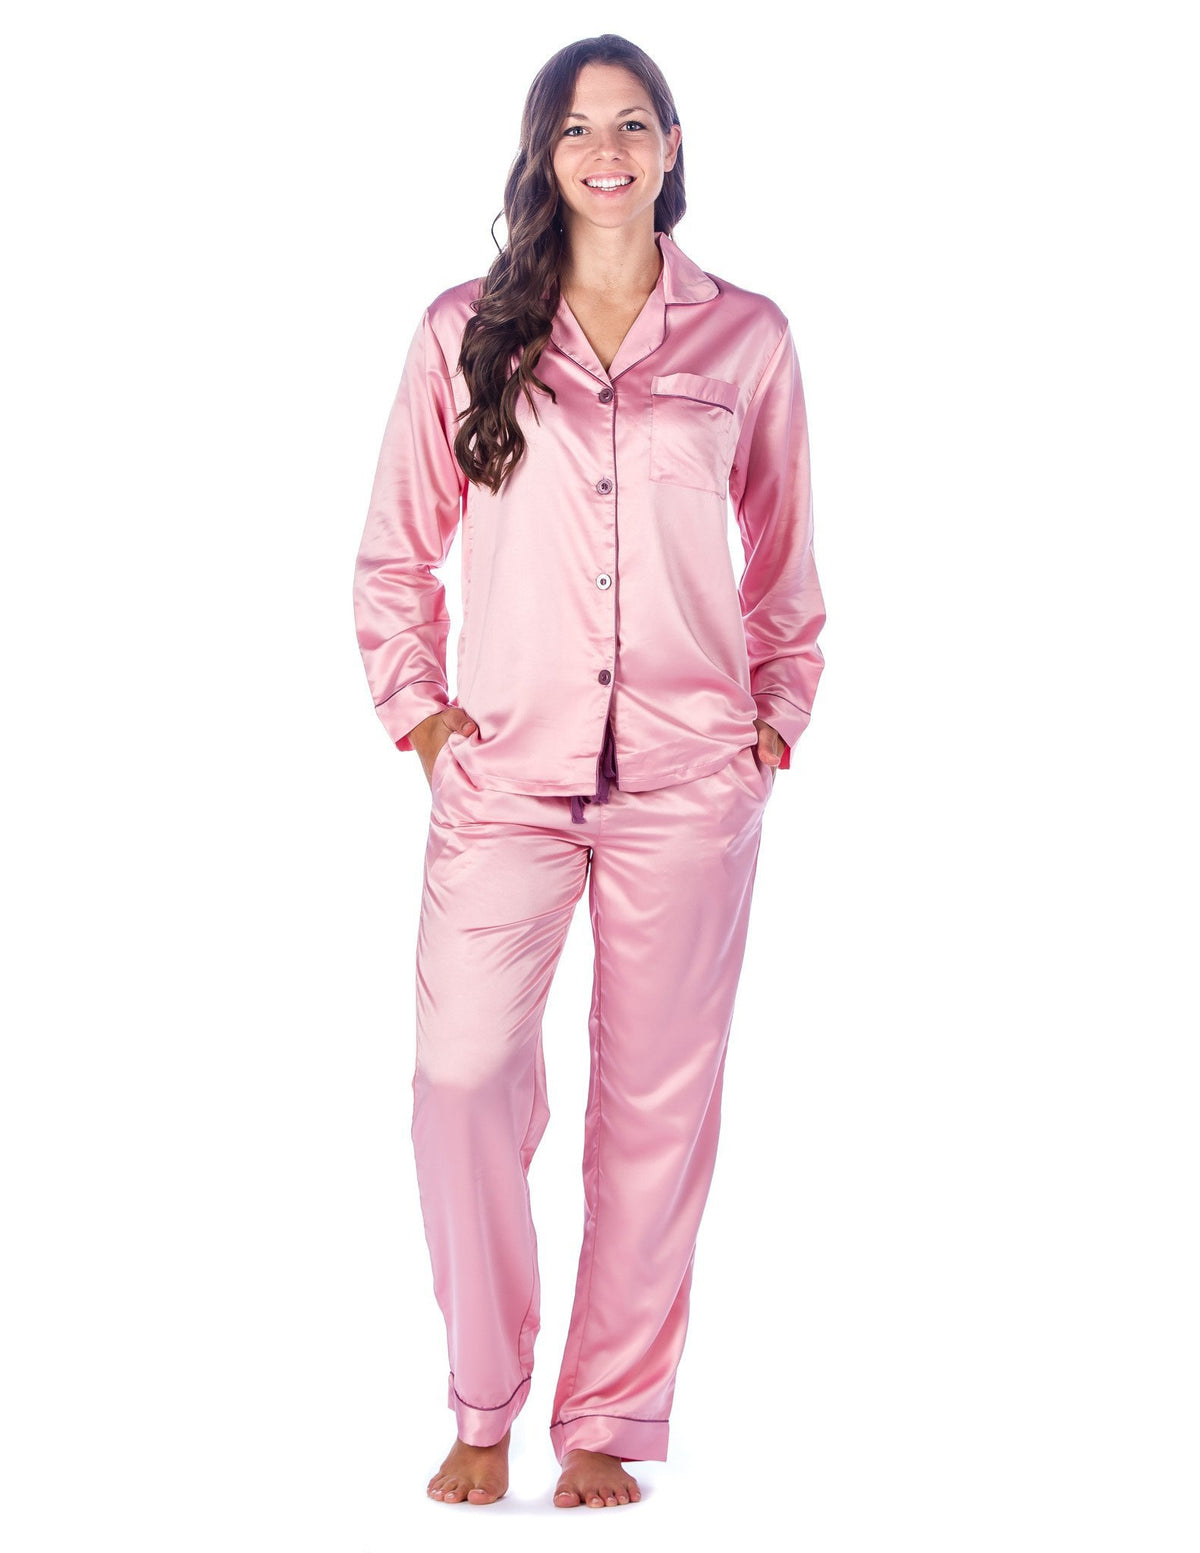 Women's Premium Satin Pajama Sleepwear Set - Pink